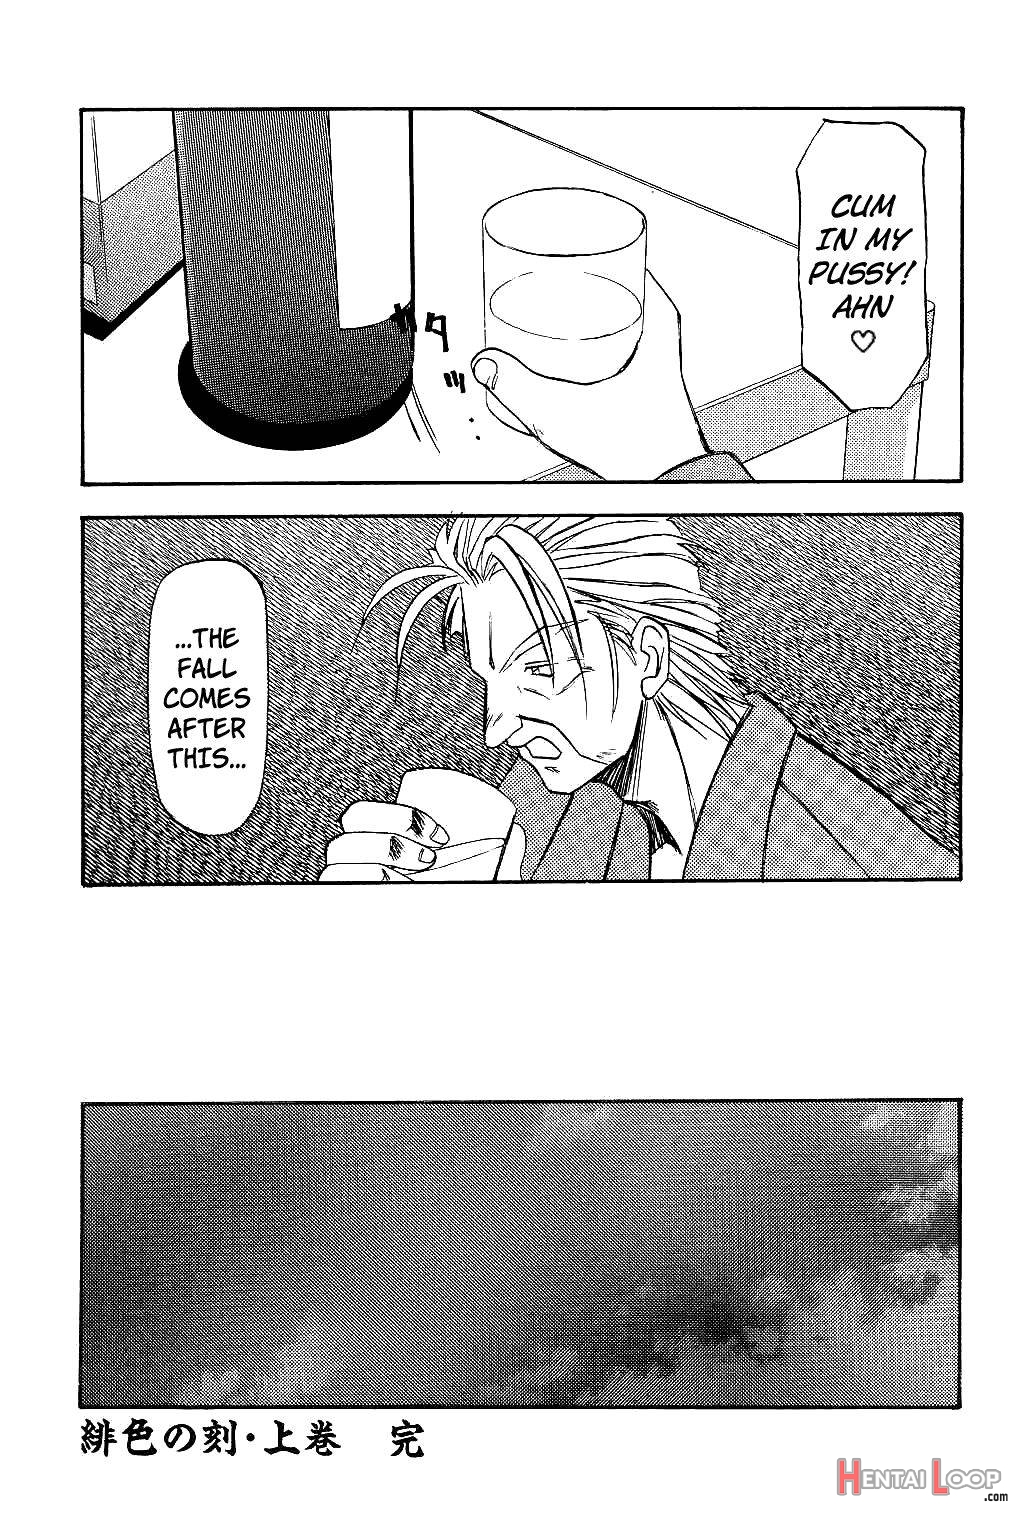 Hiiro no Koku page 154